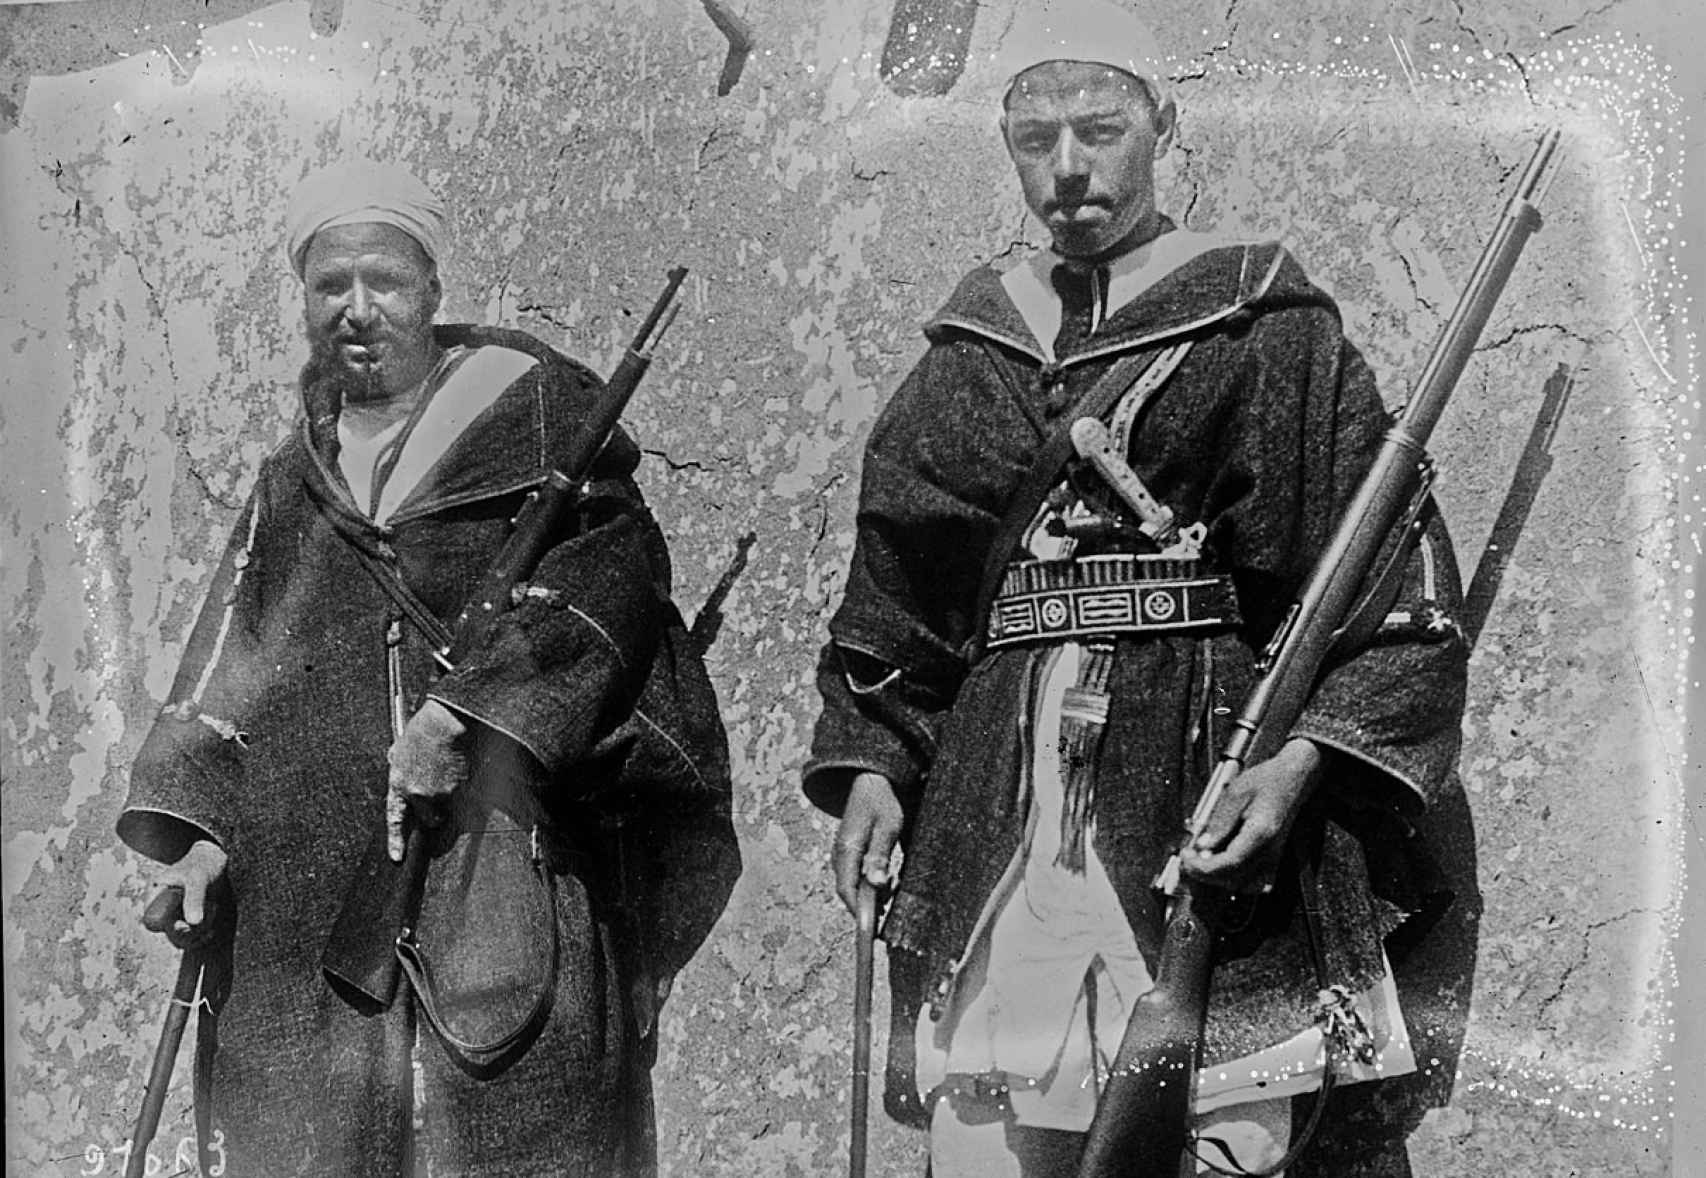 Líder rifeño Kaid Sarkash fotografiado en 1924 armado con fusiles arrebatados a los españoles.